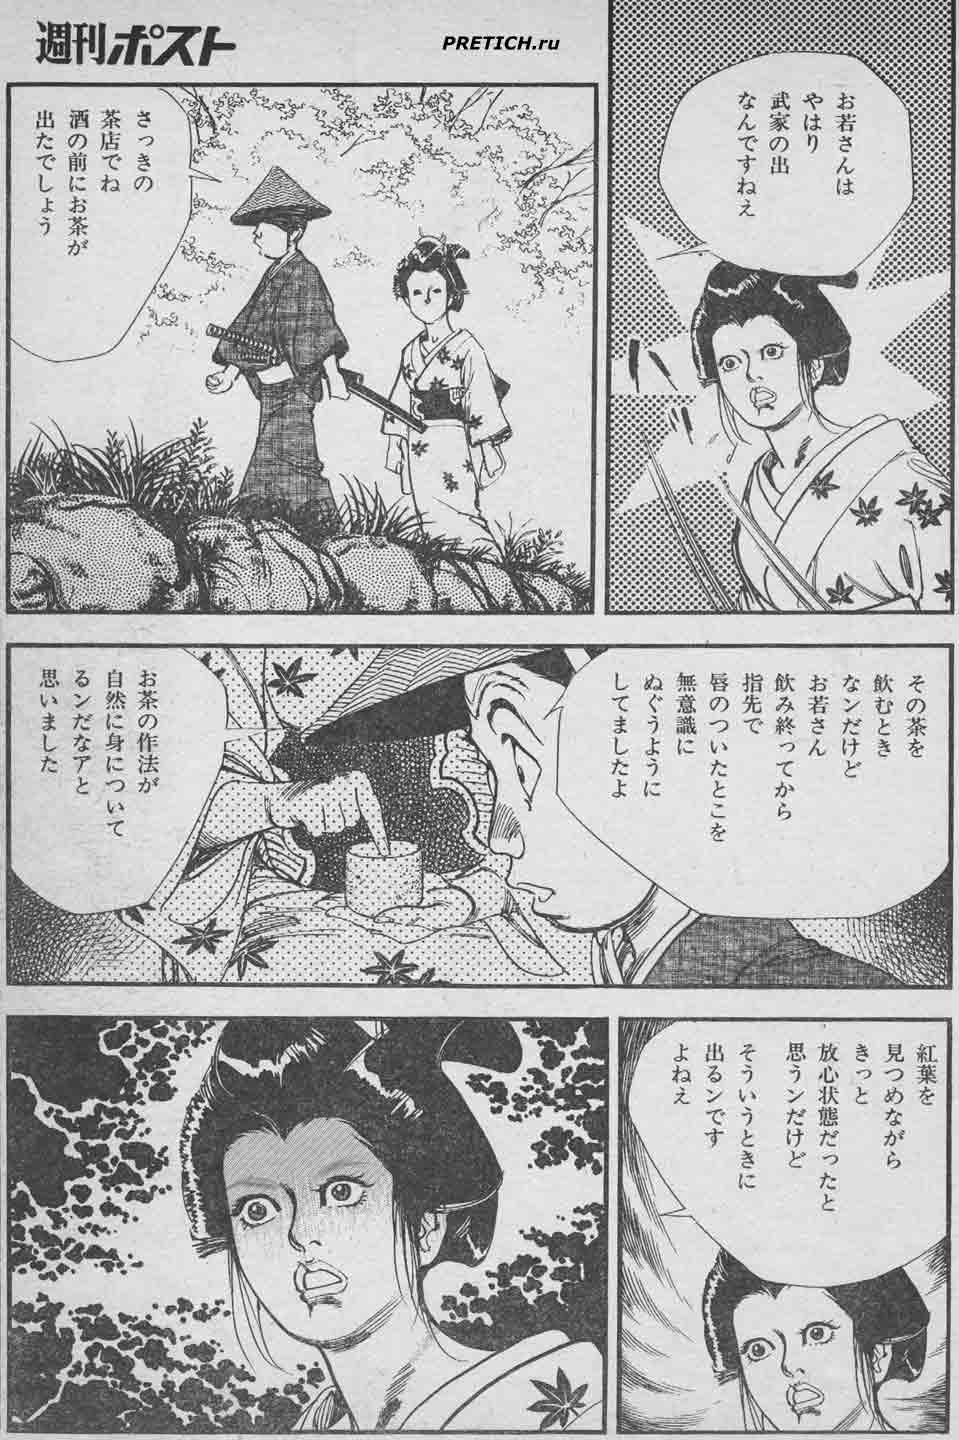 комиксы с эротикой, Япония